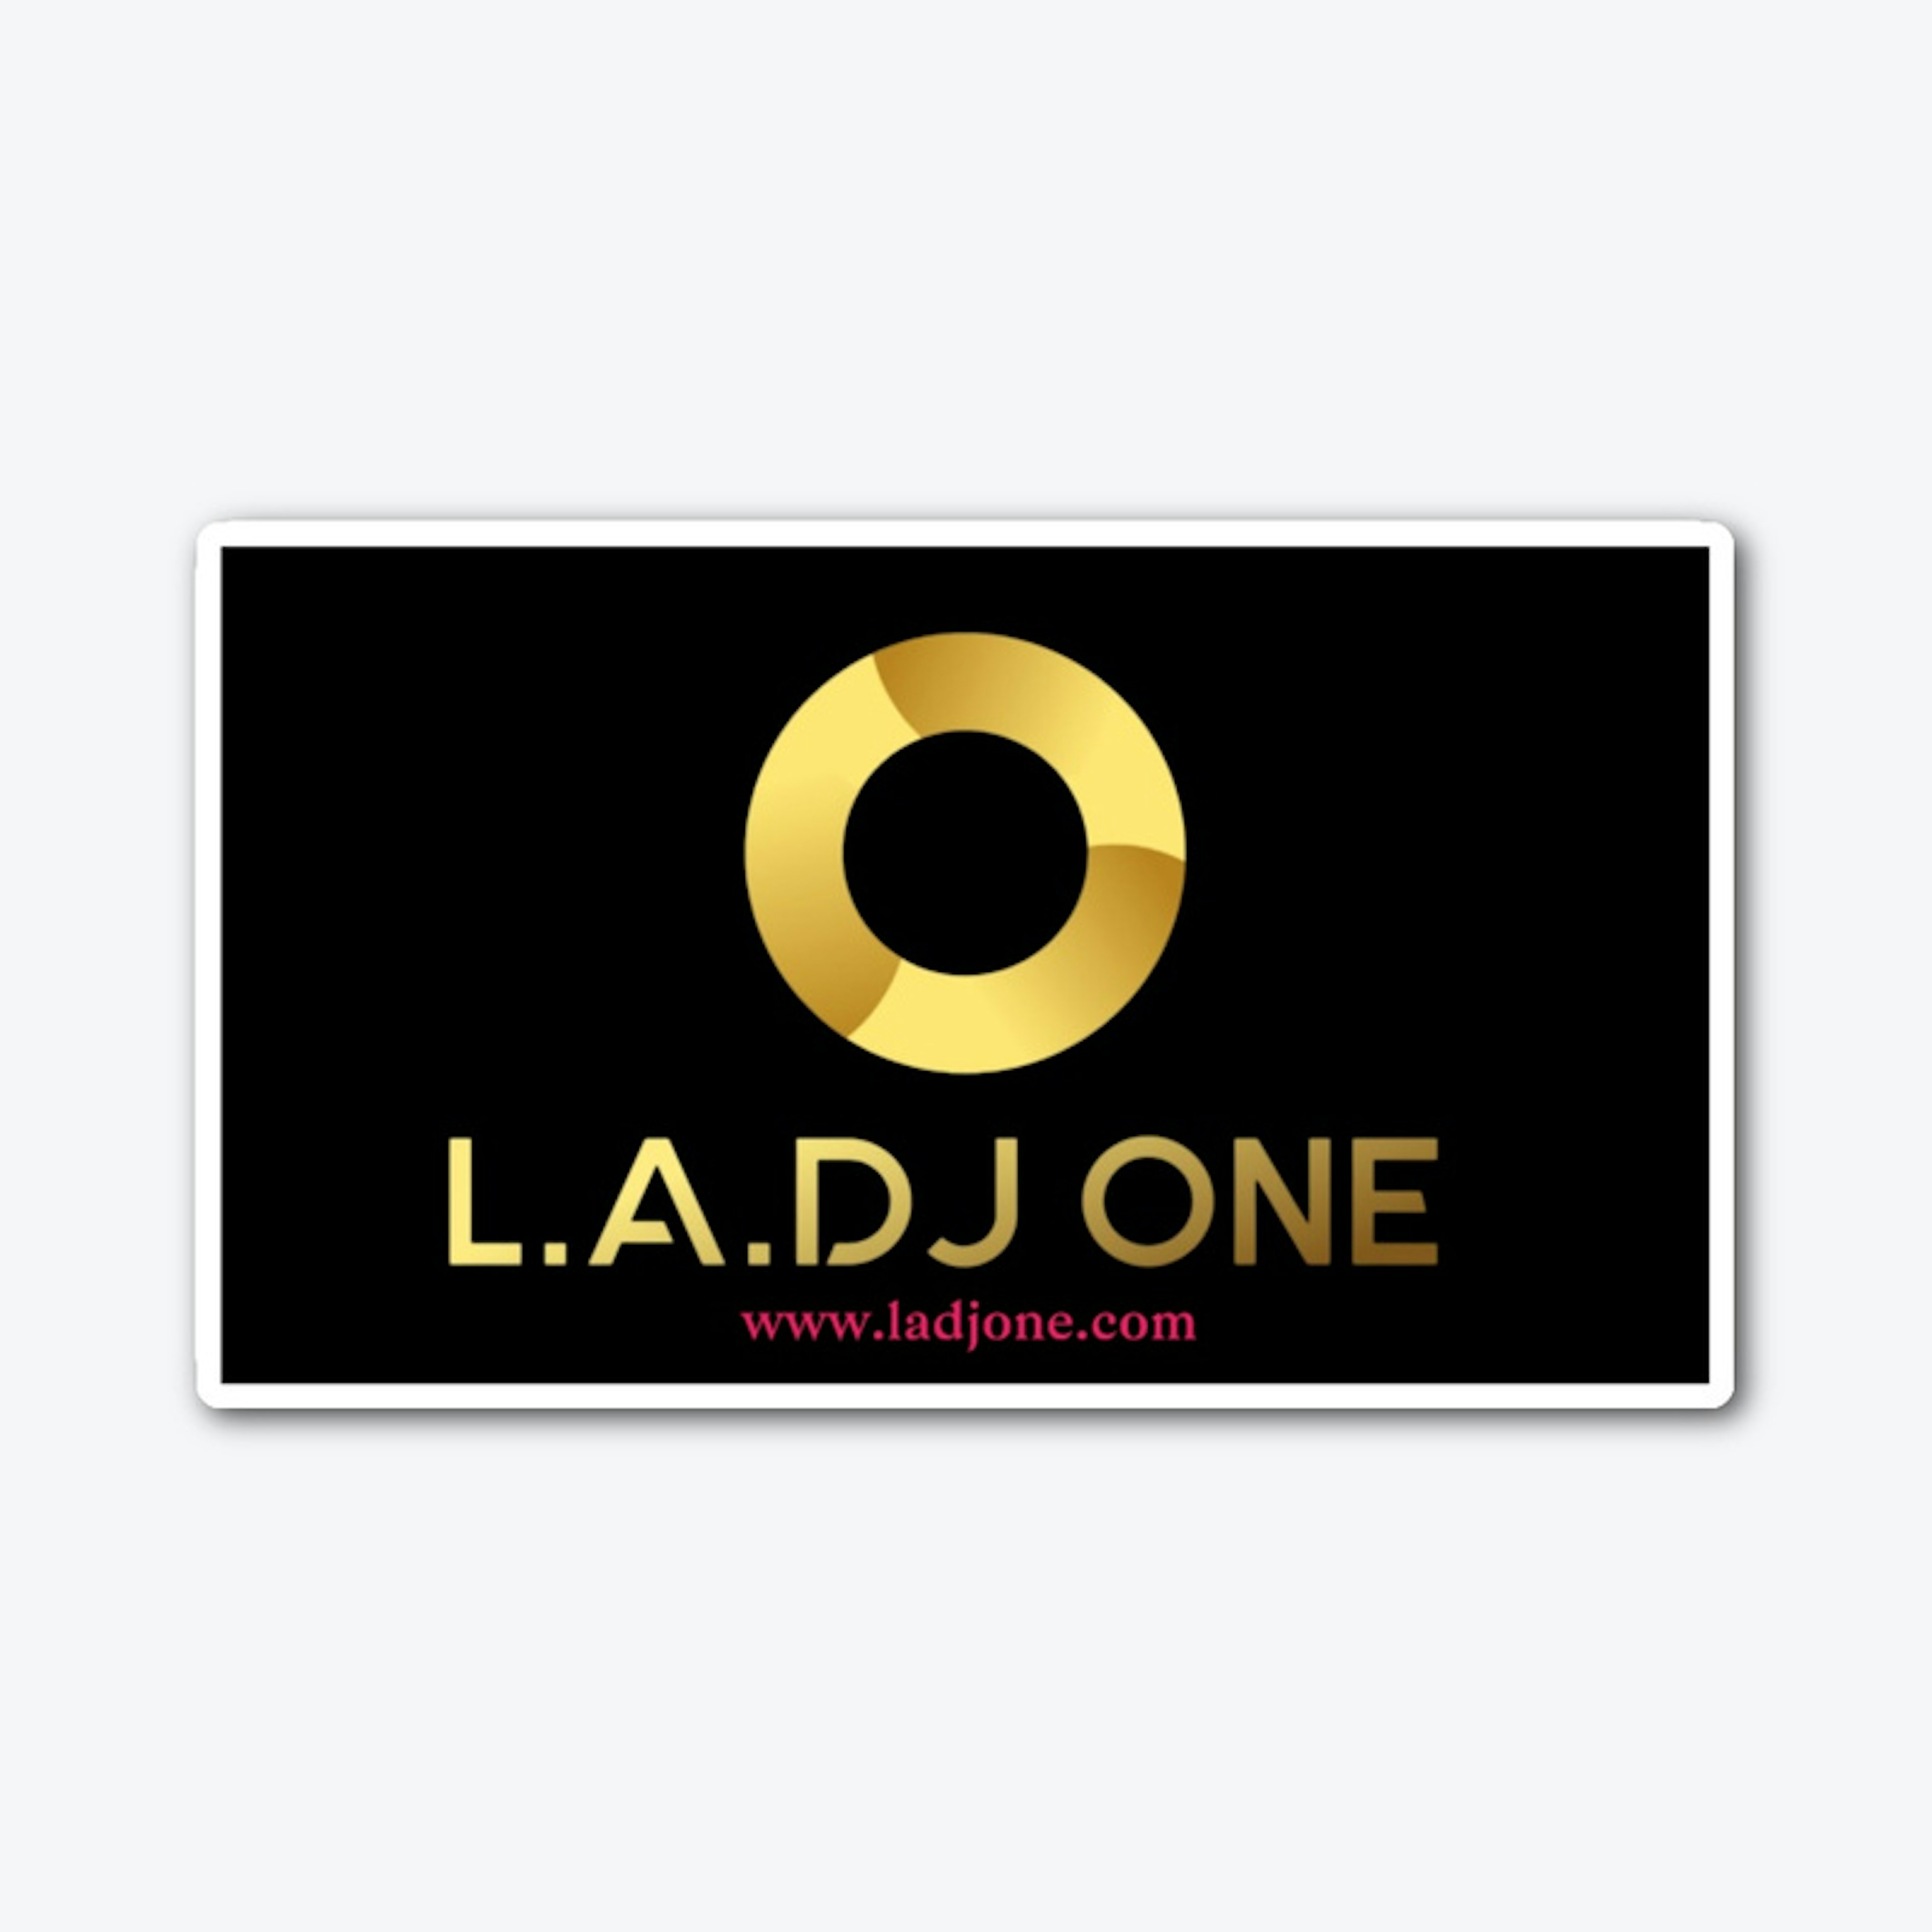 L.A. DJ ONE